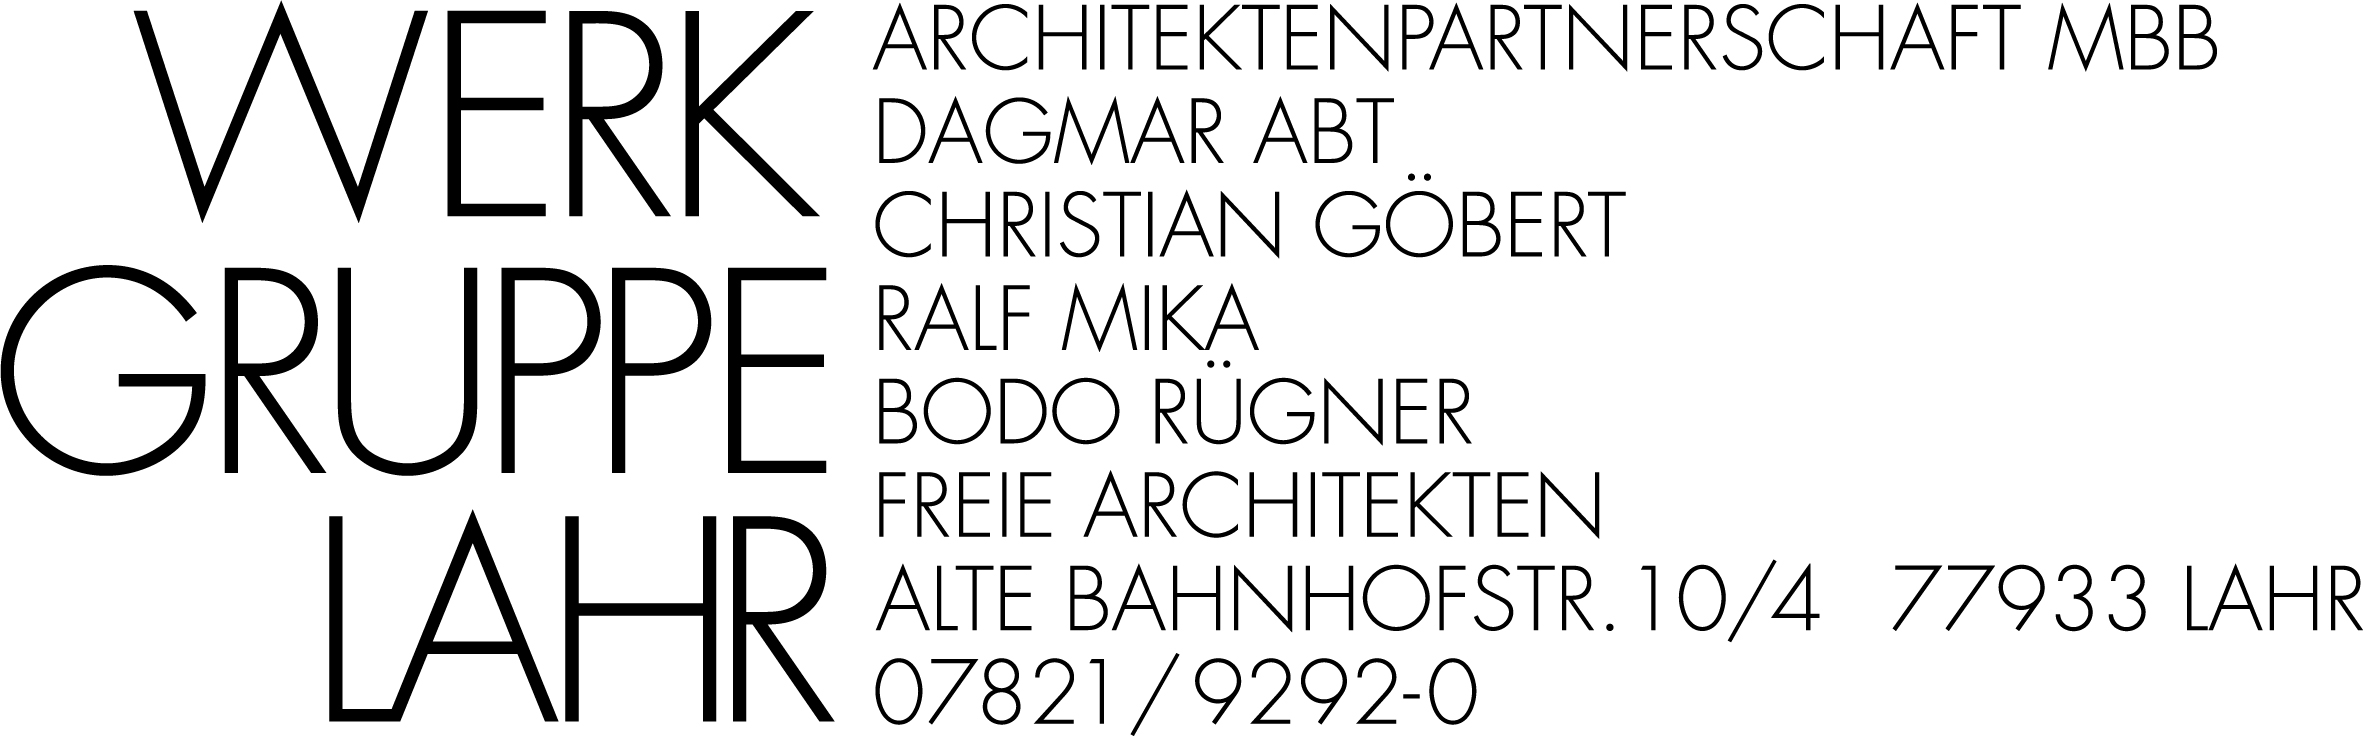 Logo von Werkgruppe Lahr Architektenpartnerschaft Abt Göbert Mika Rügner mbB